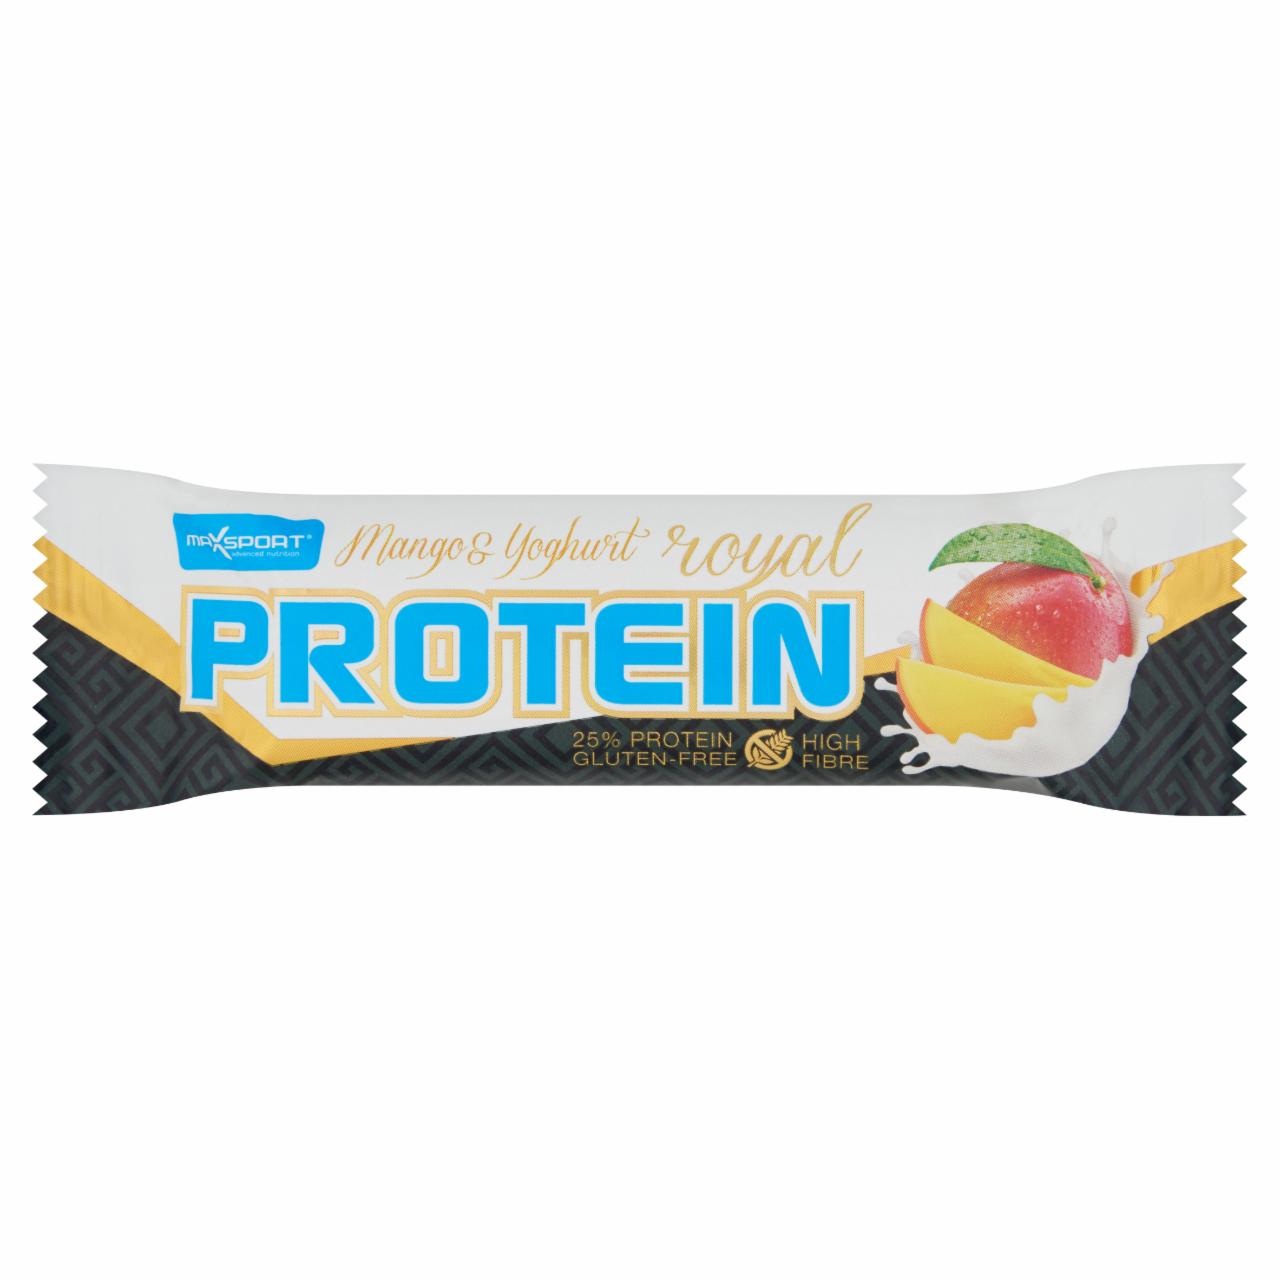 Képek - MaxSport Royal Protein gluténmentes, mangó ízű fehérje tartalmú szelet, joghurtos bevonattal 60 g